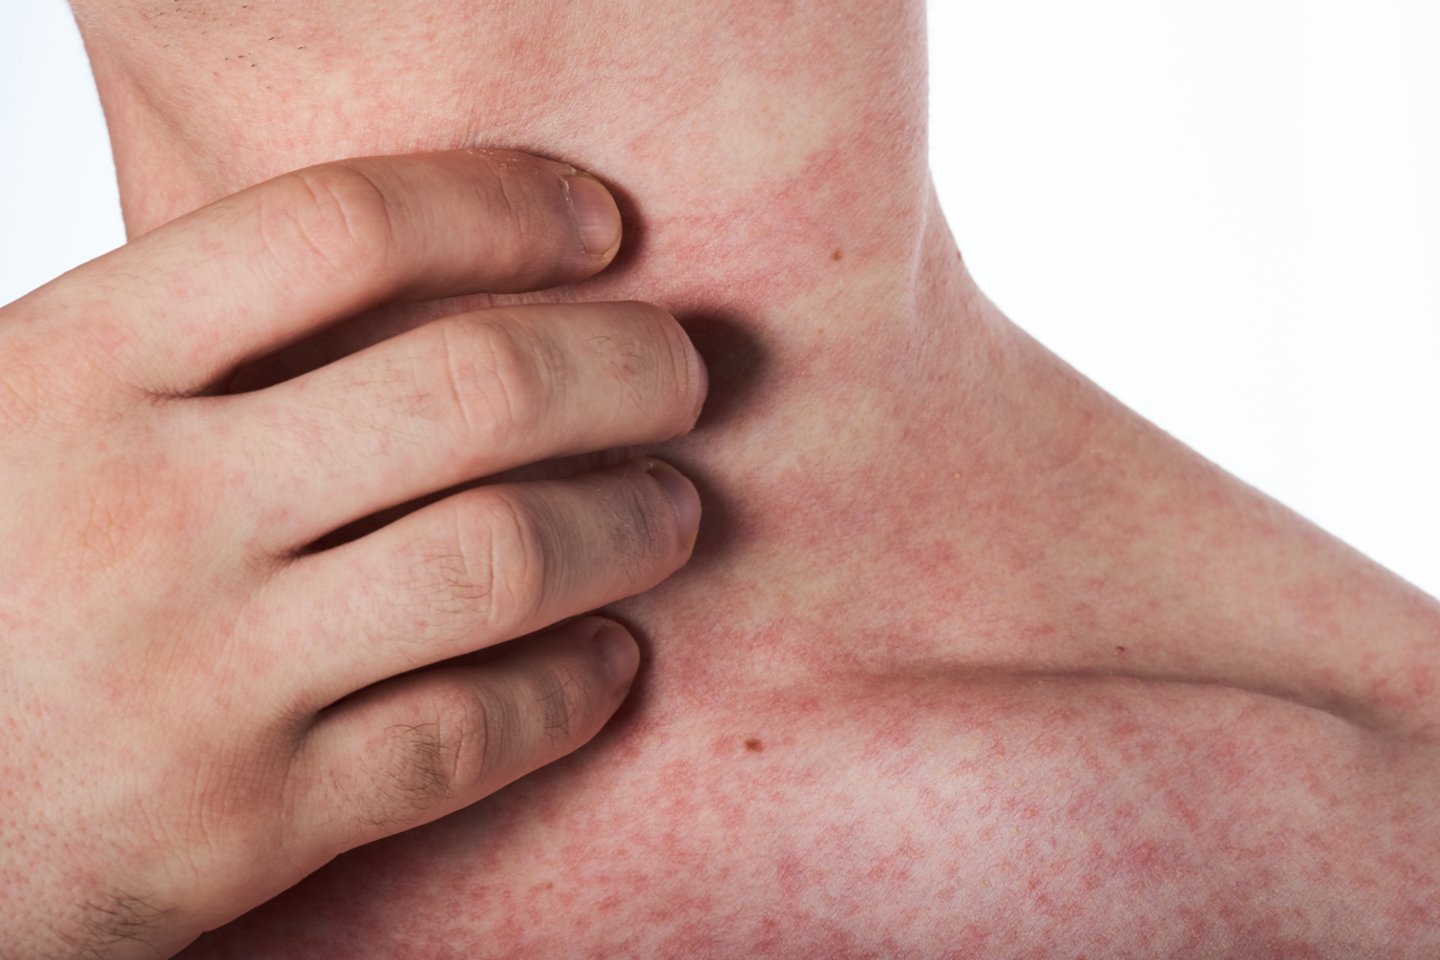 Gydytoja alergologė-klinikinė imunologė įspėja, jog nusilpusią imuninę sistemą gali išduoti pakitusi odos būklė.<br>123rf nuotr.